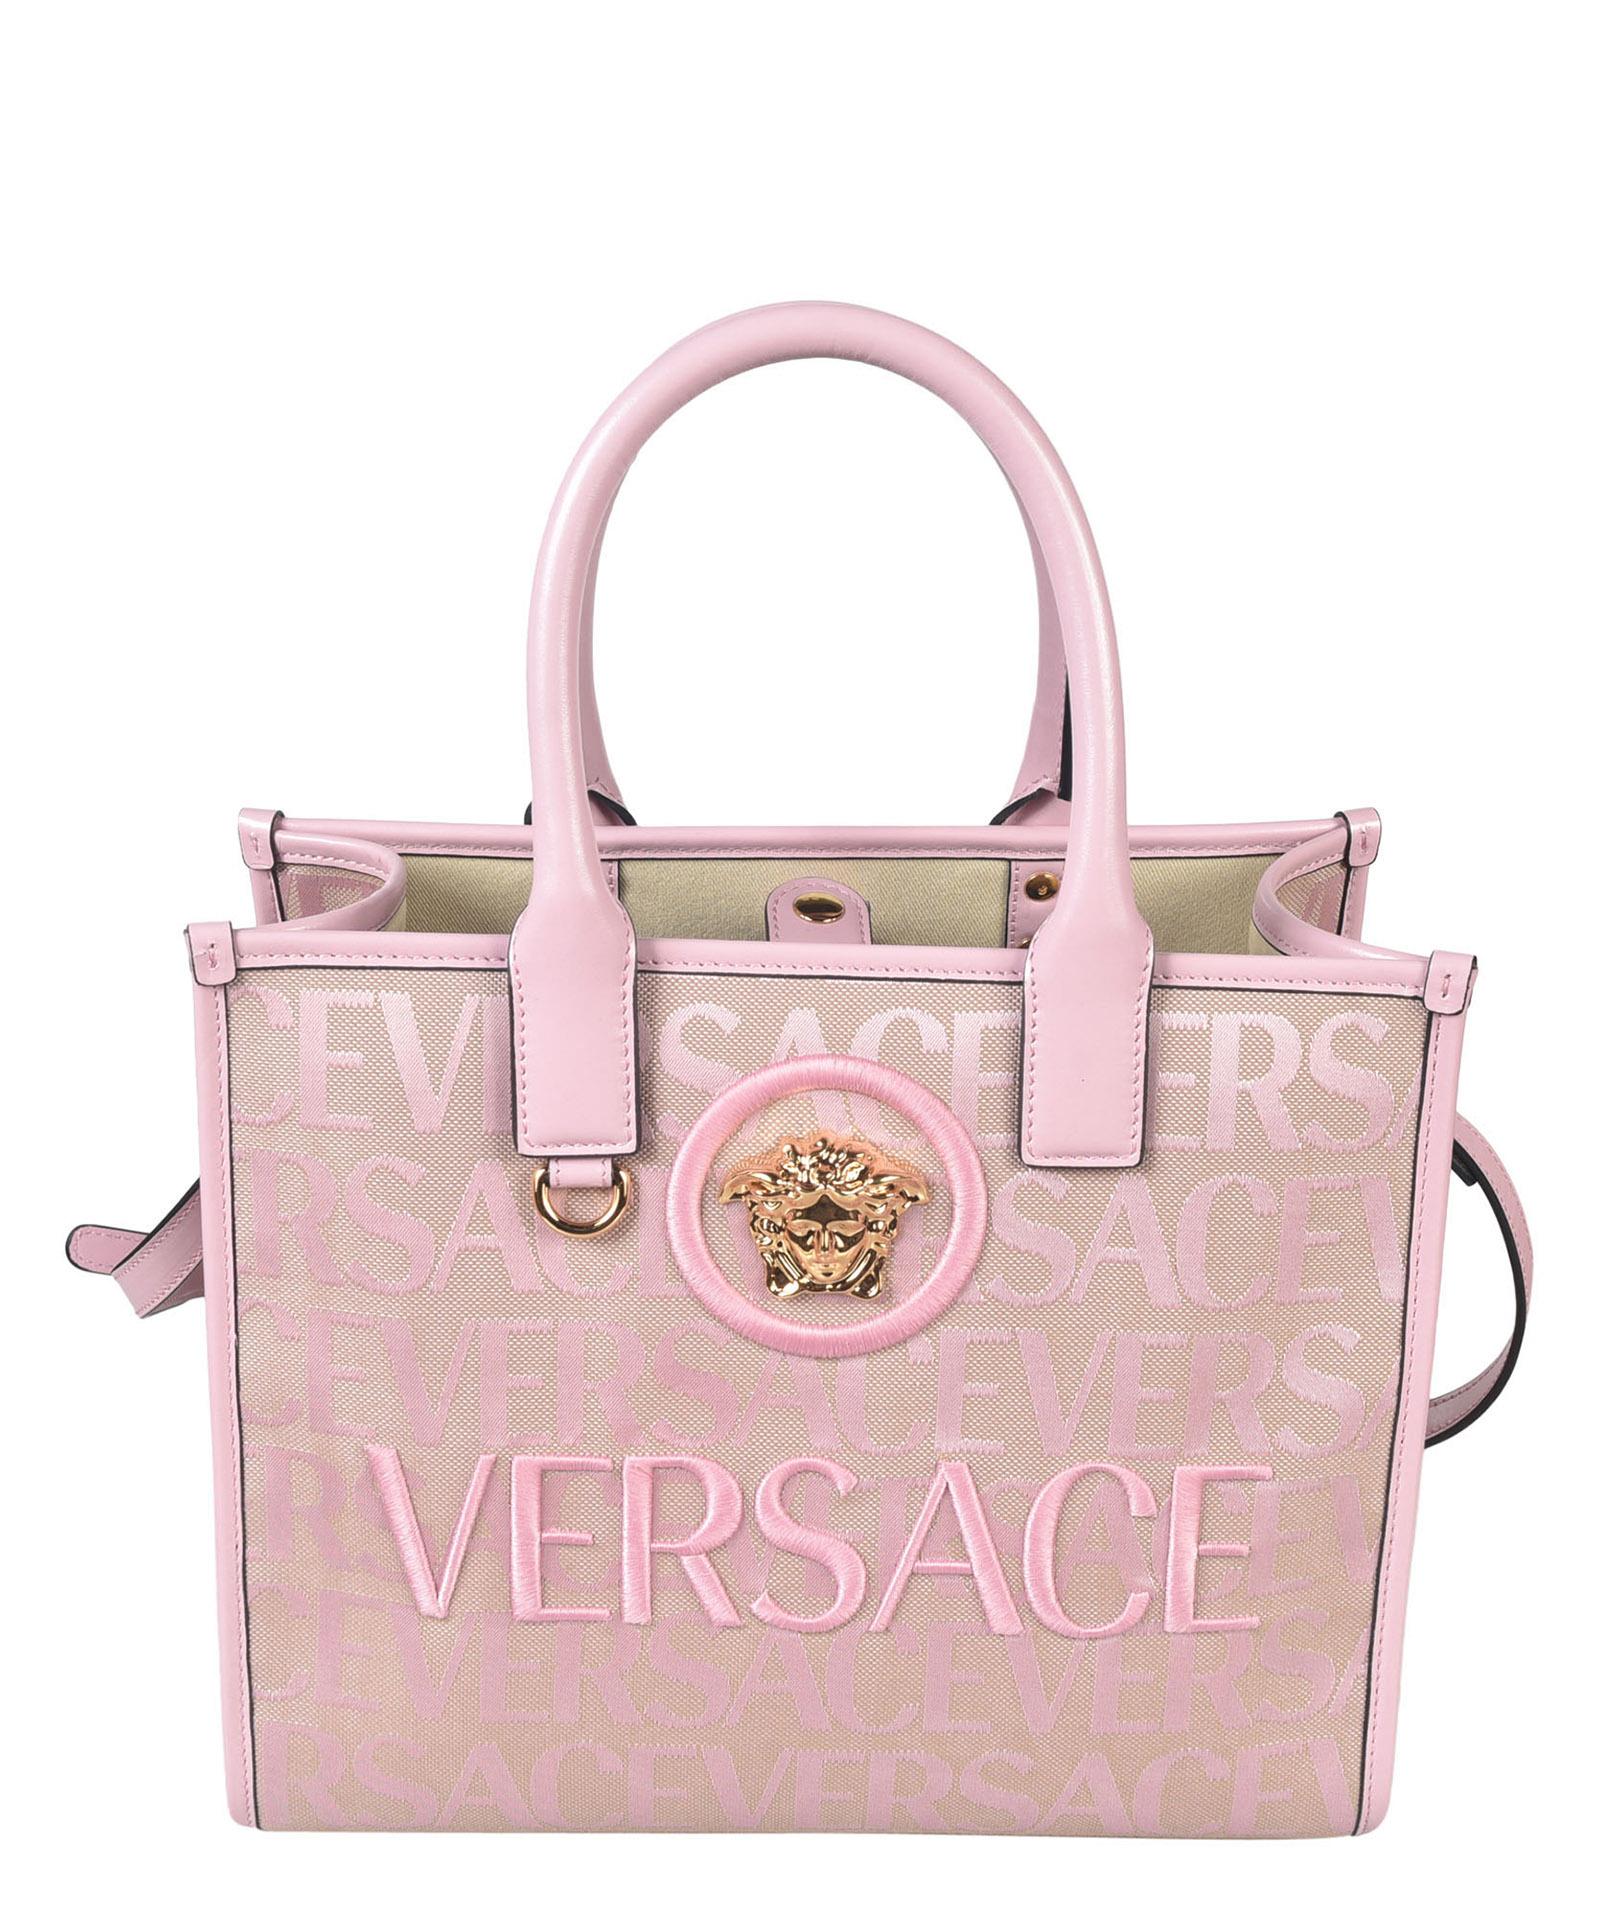 Versace Canvas Tote Bag - Pink Totes, Handbags - VES131238